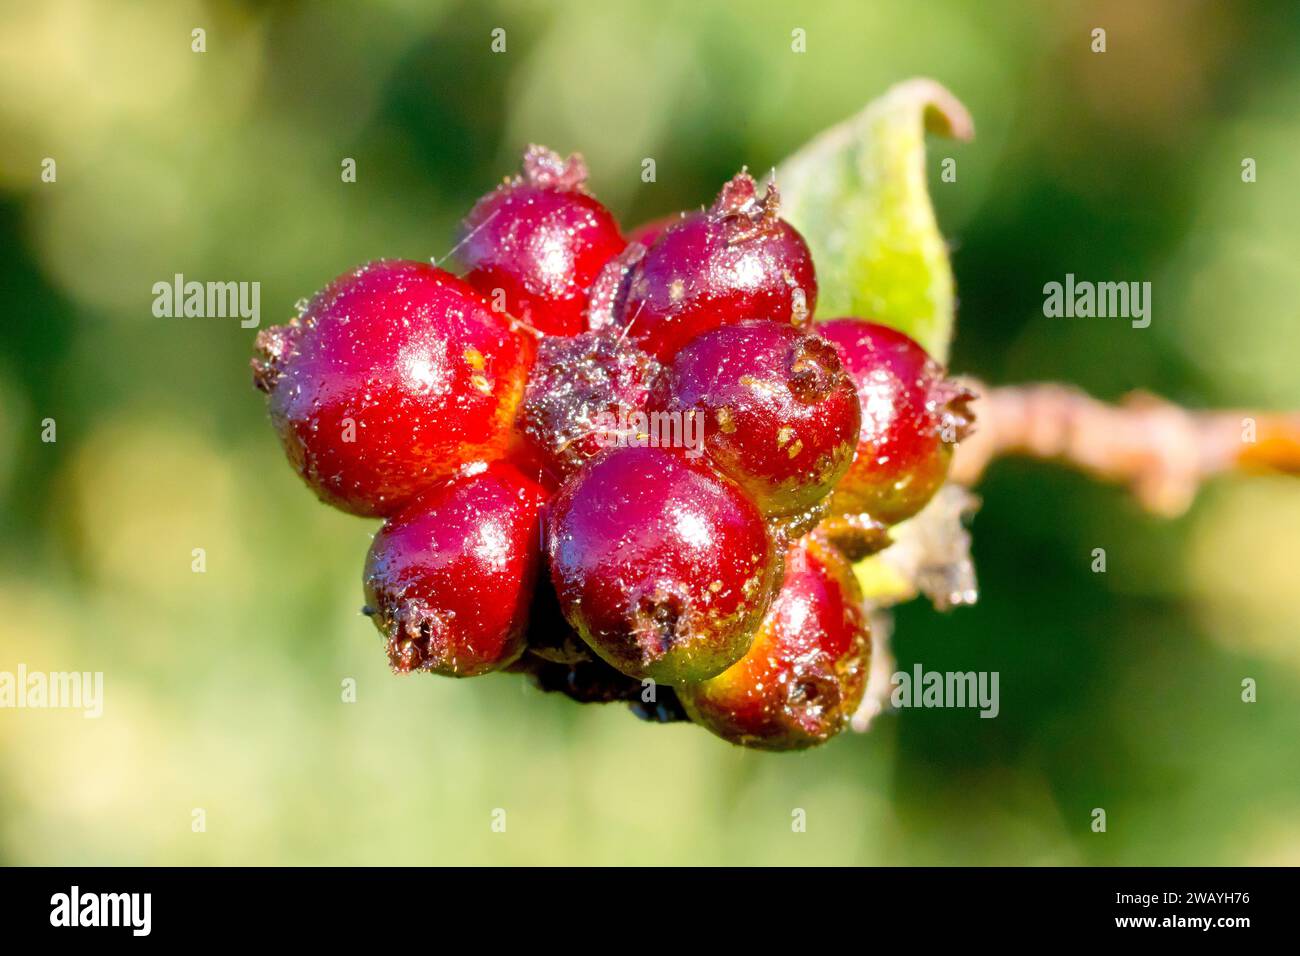 Chèvrefeuille (lonicera periclymenum), gros plan montrant les baies rouges bien emballées que l'arbuste grimpant commun produit à l'automne. Banque D'Images